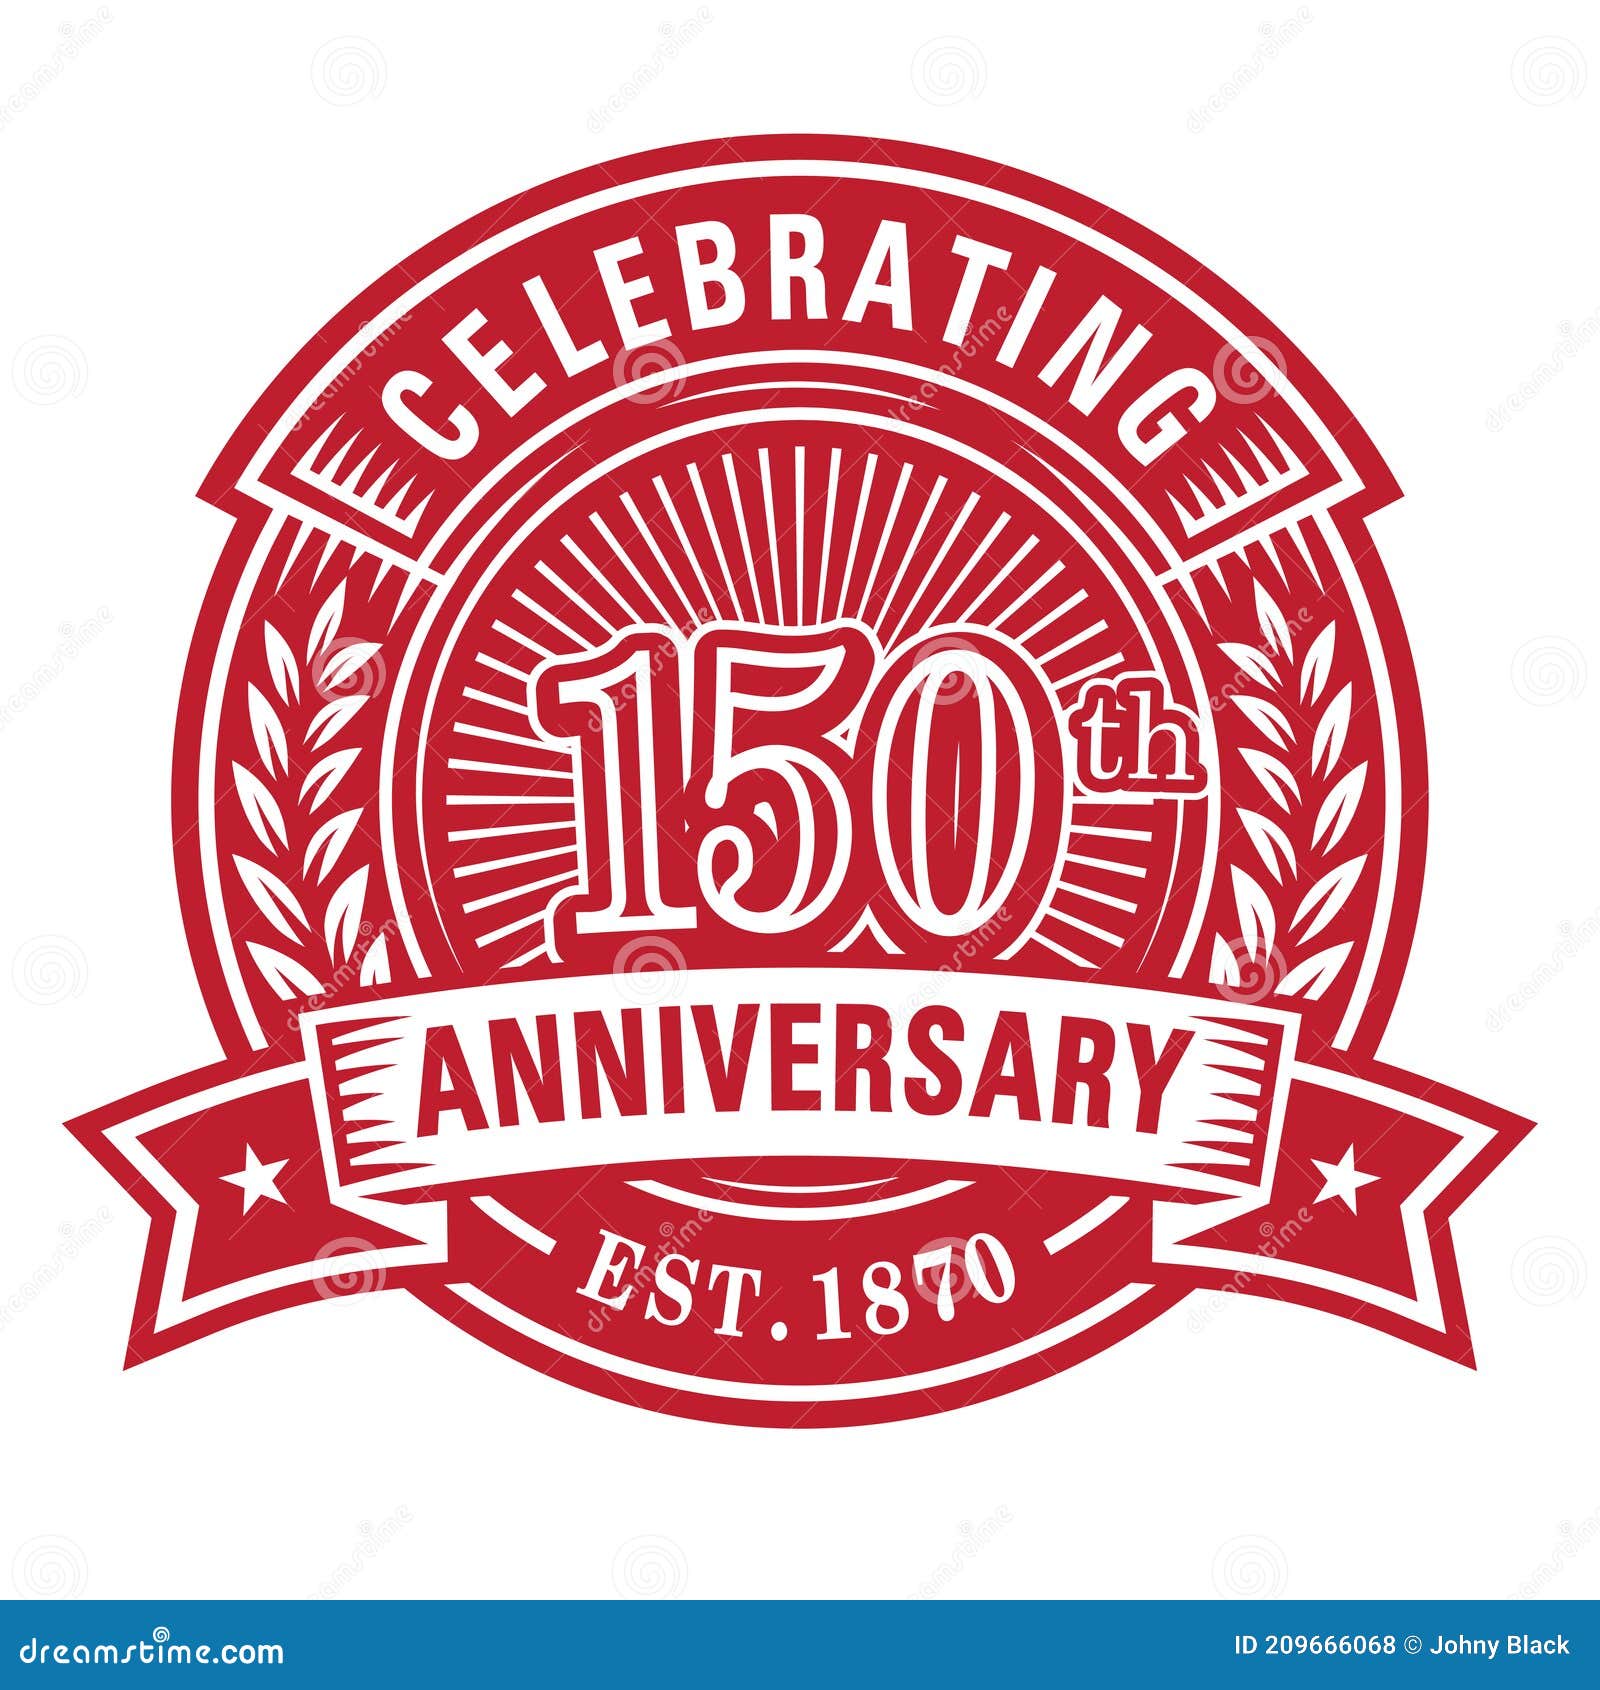 Free Vector  150 years anniversary badge